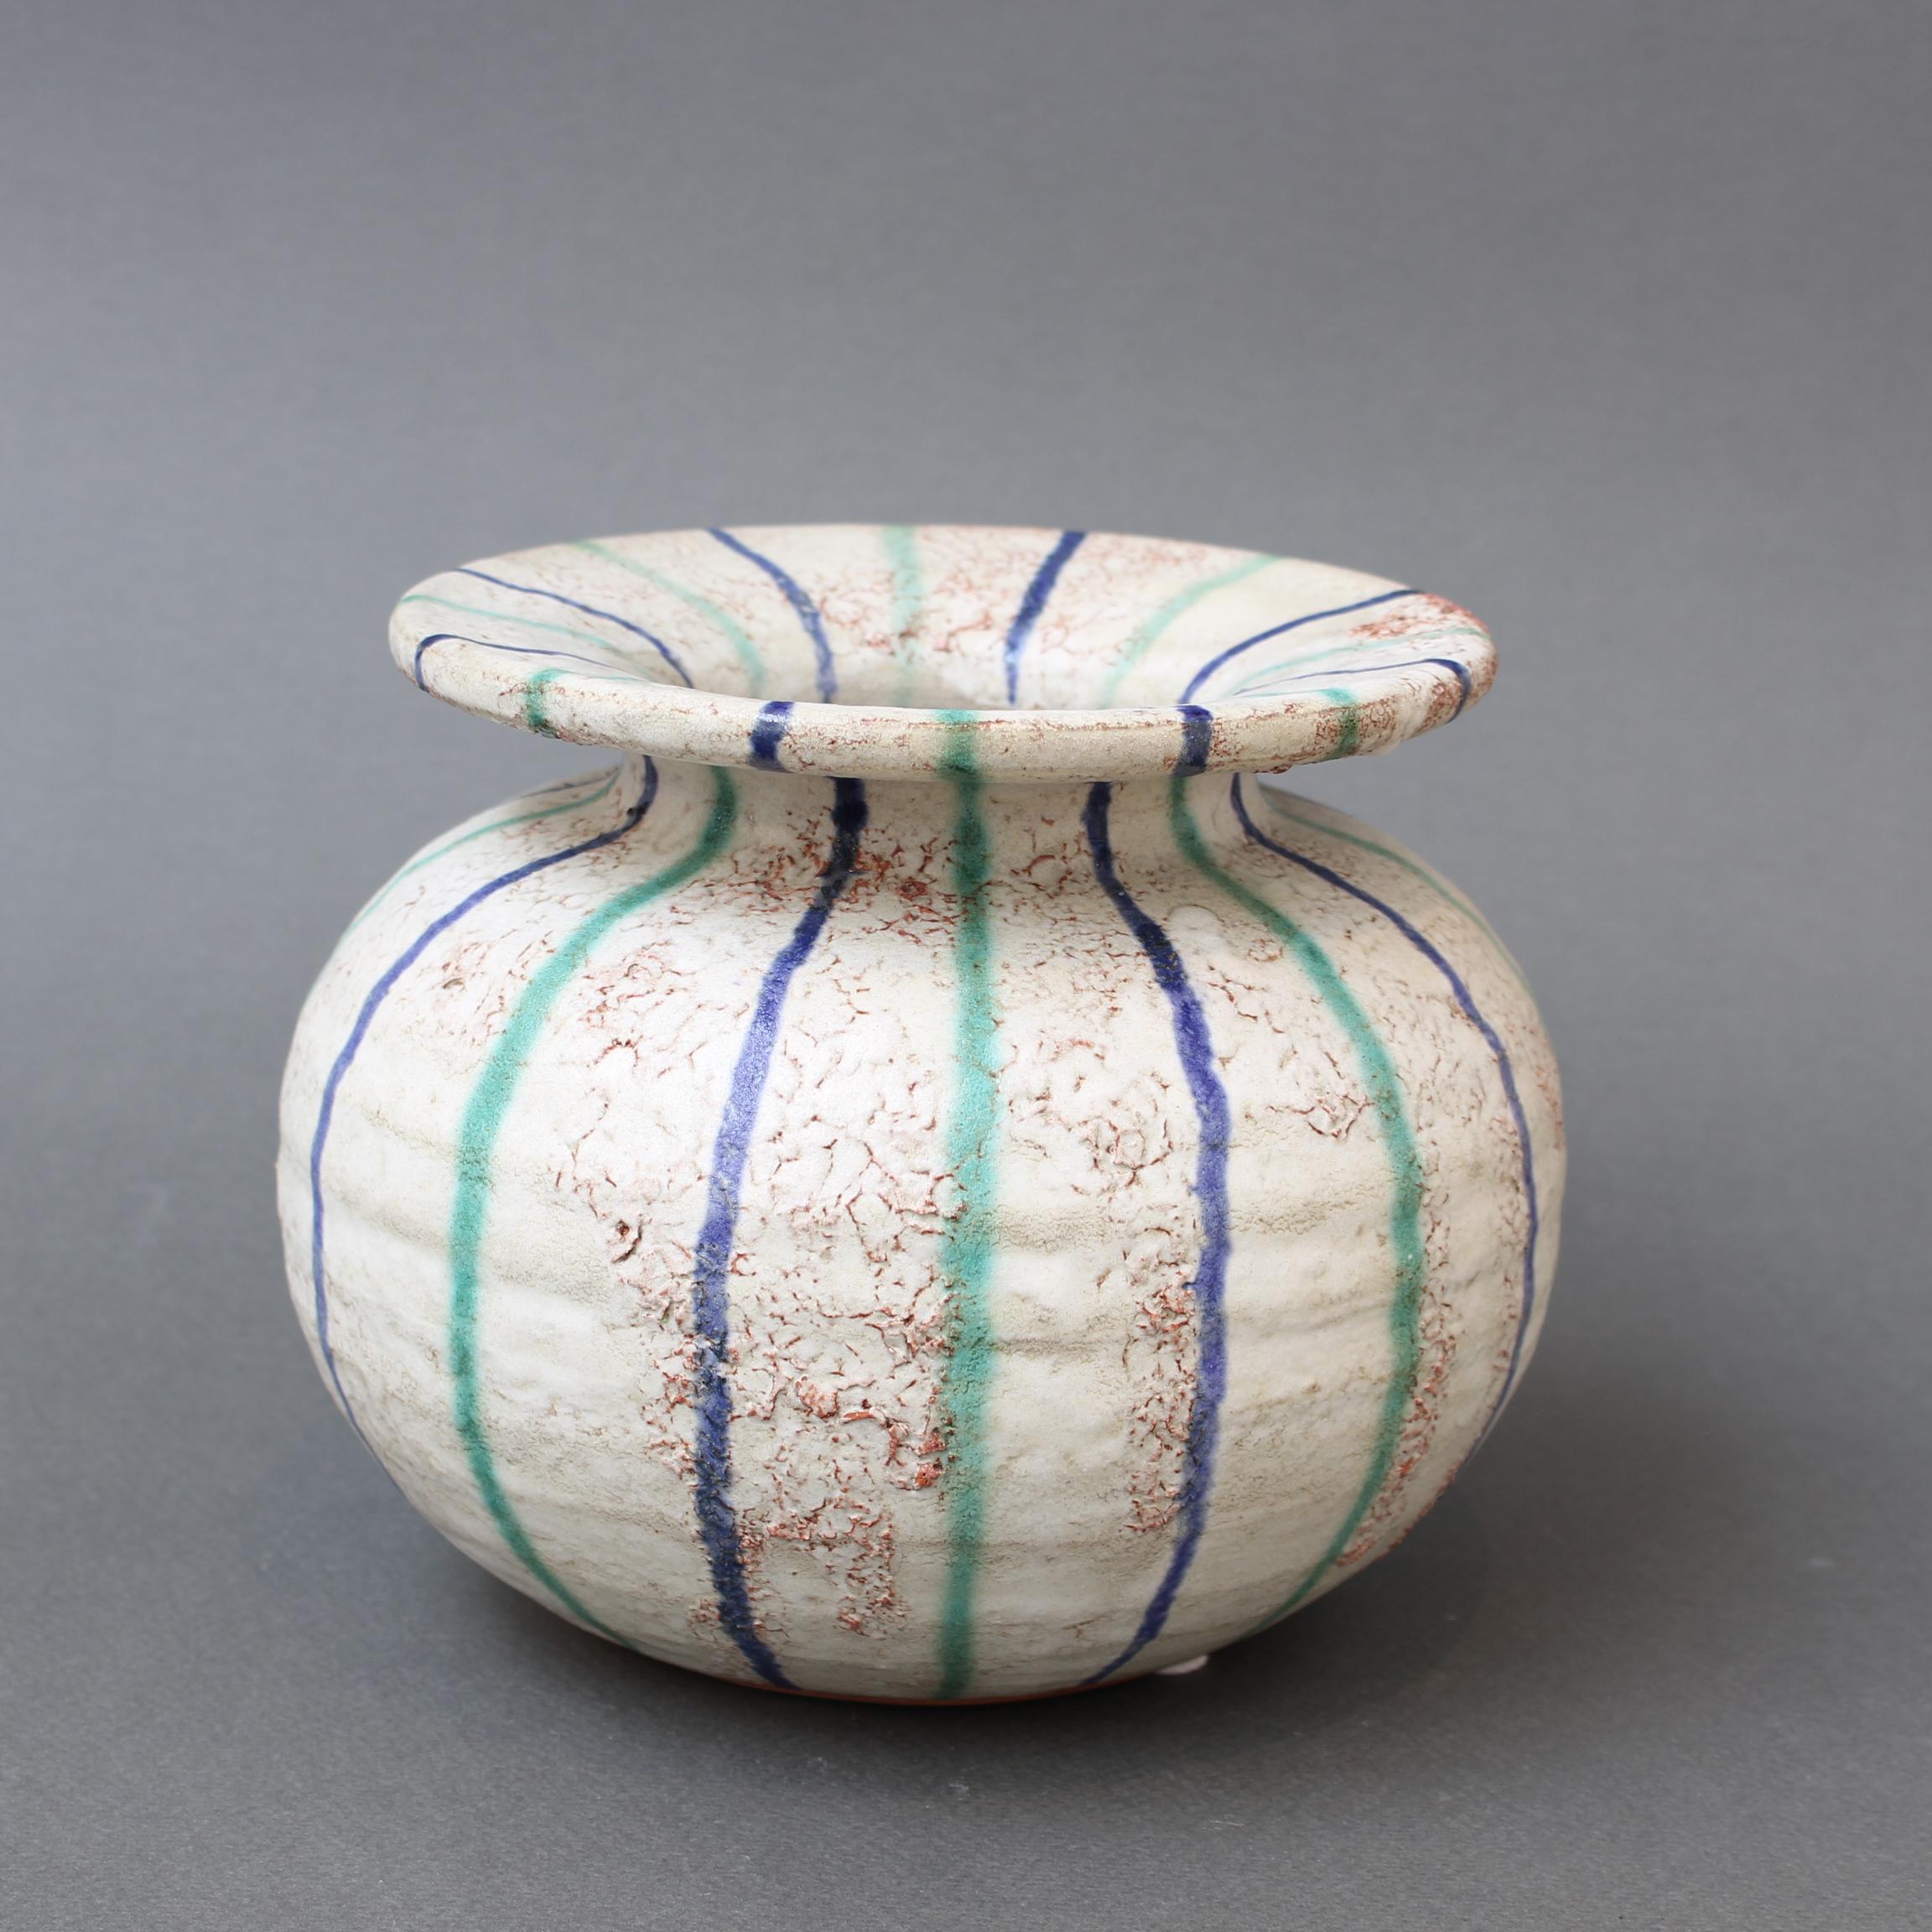 Vase vintage en céramique attribué à Aldo Londi pour Bitossi (circa 1960). Il s'agit d'une forme et d'un schéma de décoration rares provenant de Bitossi, découvert dans le centre de l'Italie. Il a une forme arrondie classique avec un cou court et